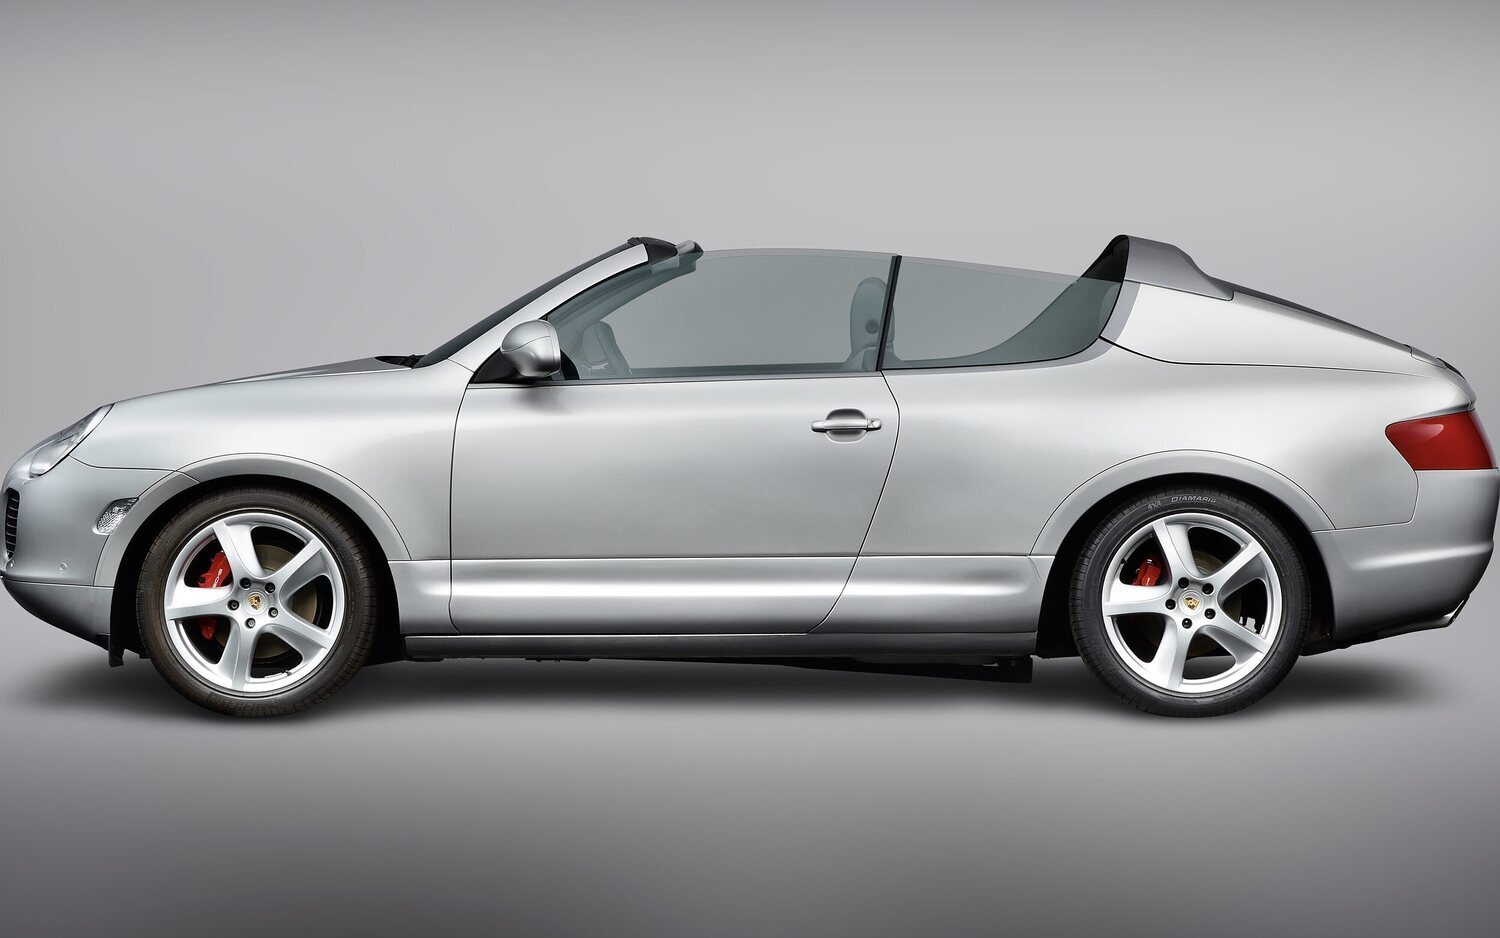 El Porsche Cayenne fue ideado con una versión descapotable